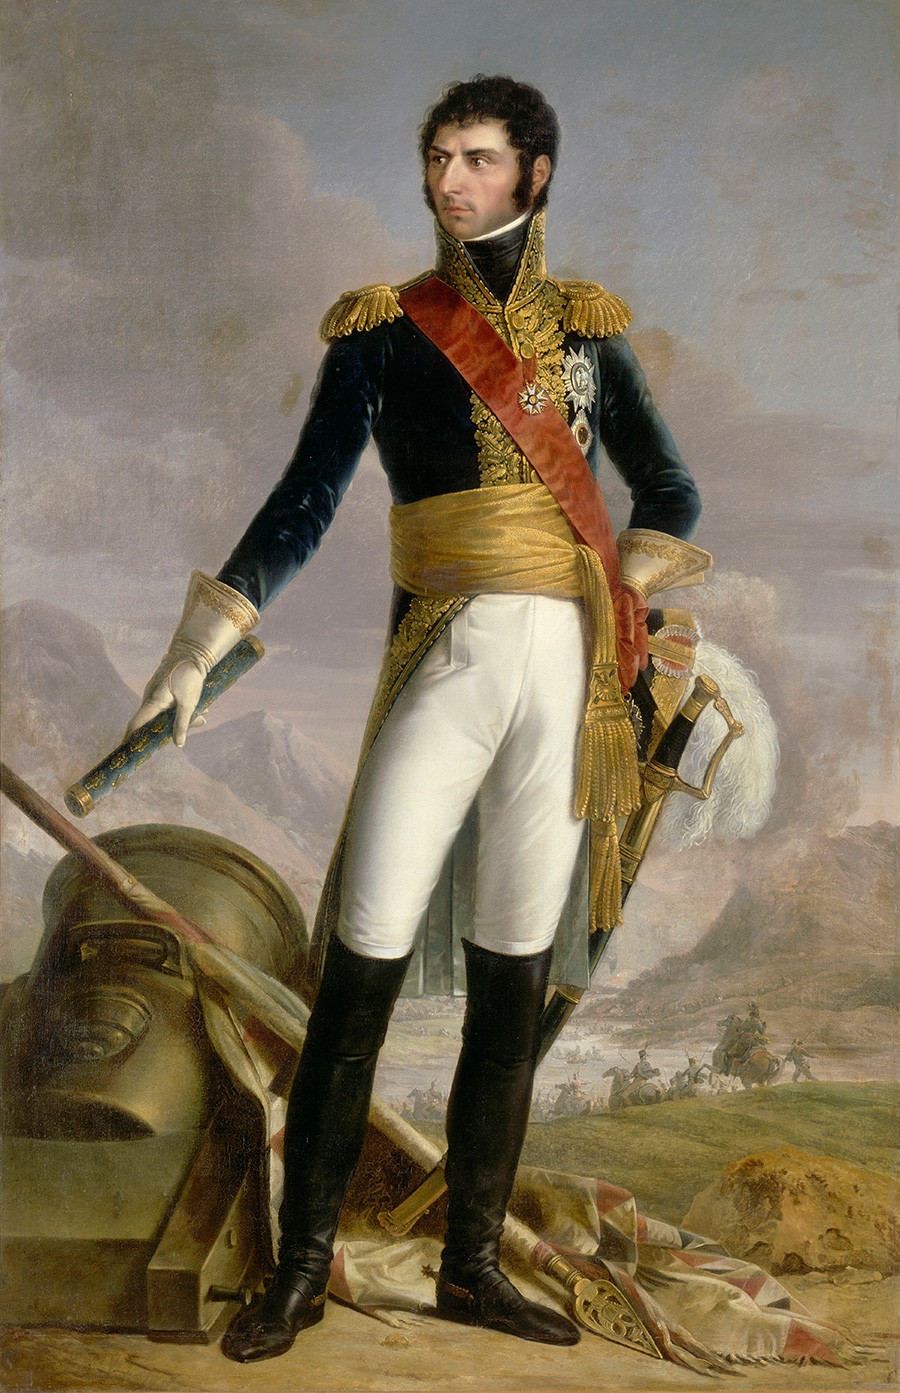 Francoski maršal Jean Baptiste Bernadotte, švedski in norveški kralj, 1818. Slika Francoisa Josepha Kinsona